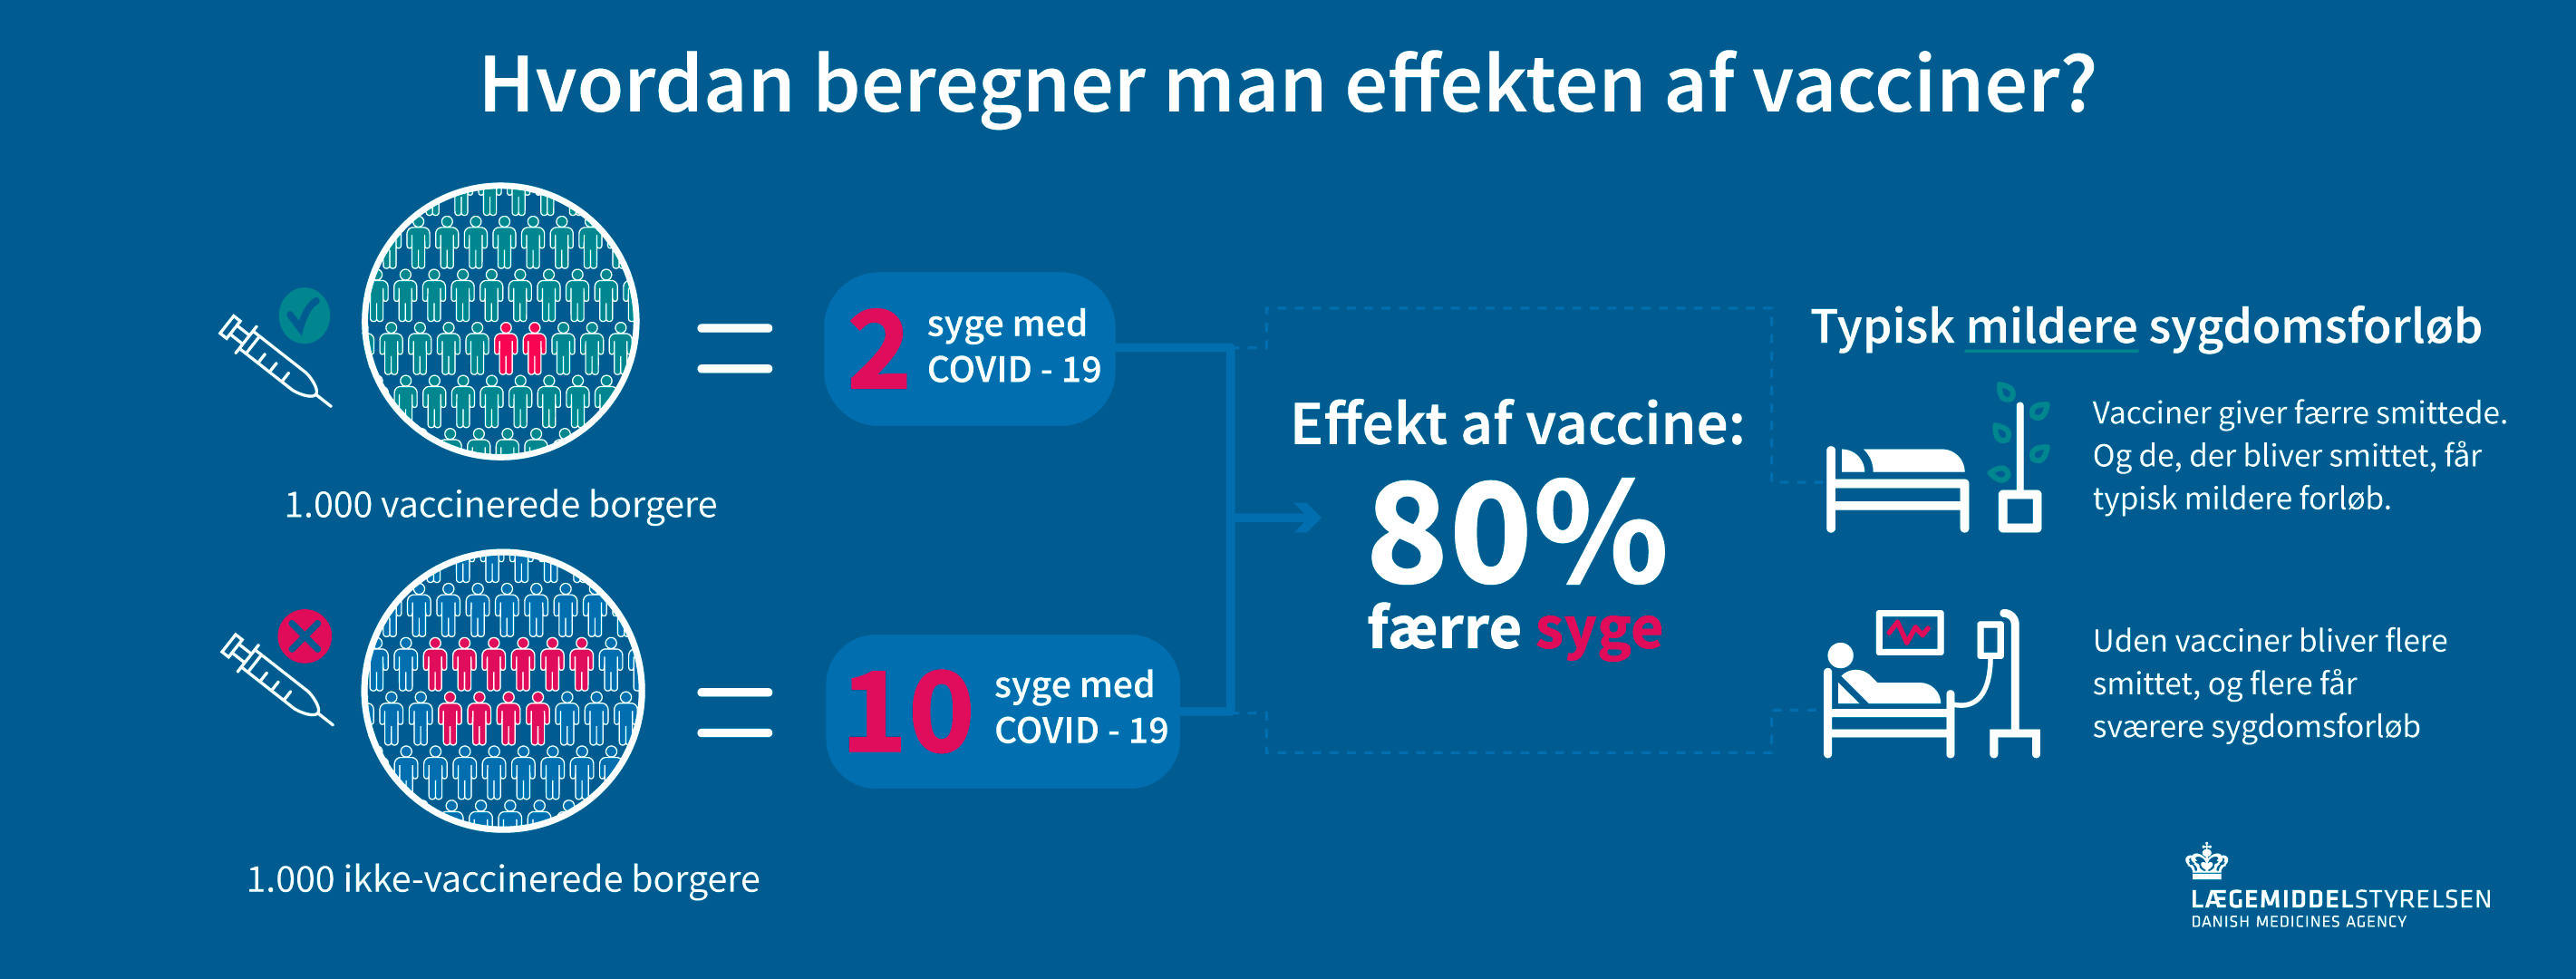 Vaccine effekt